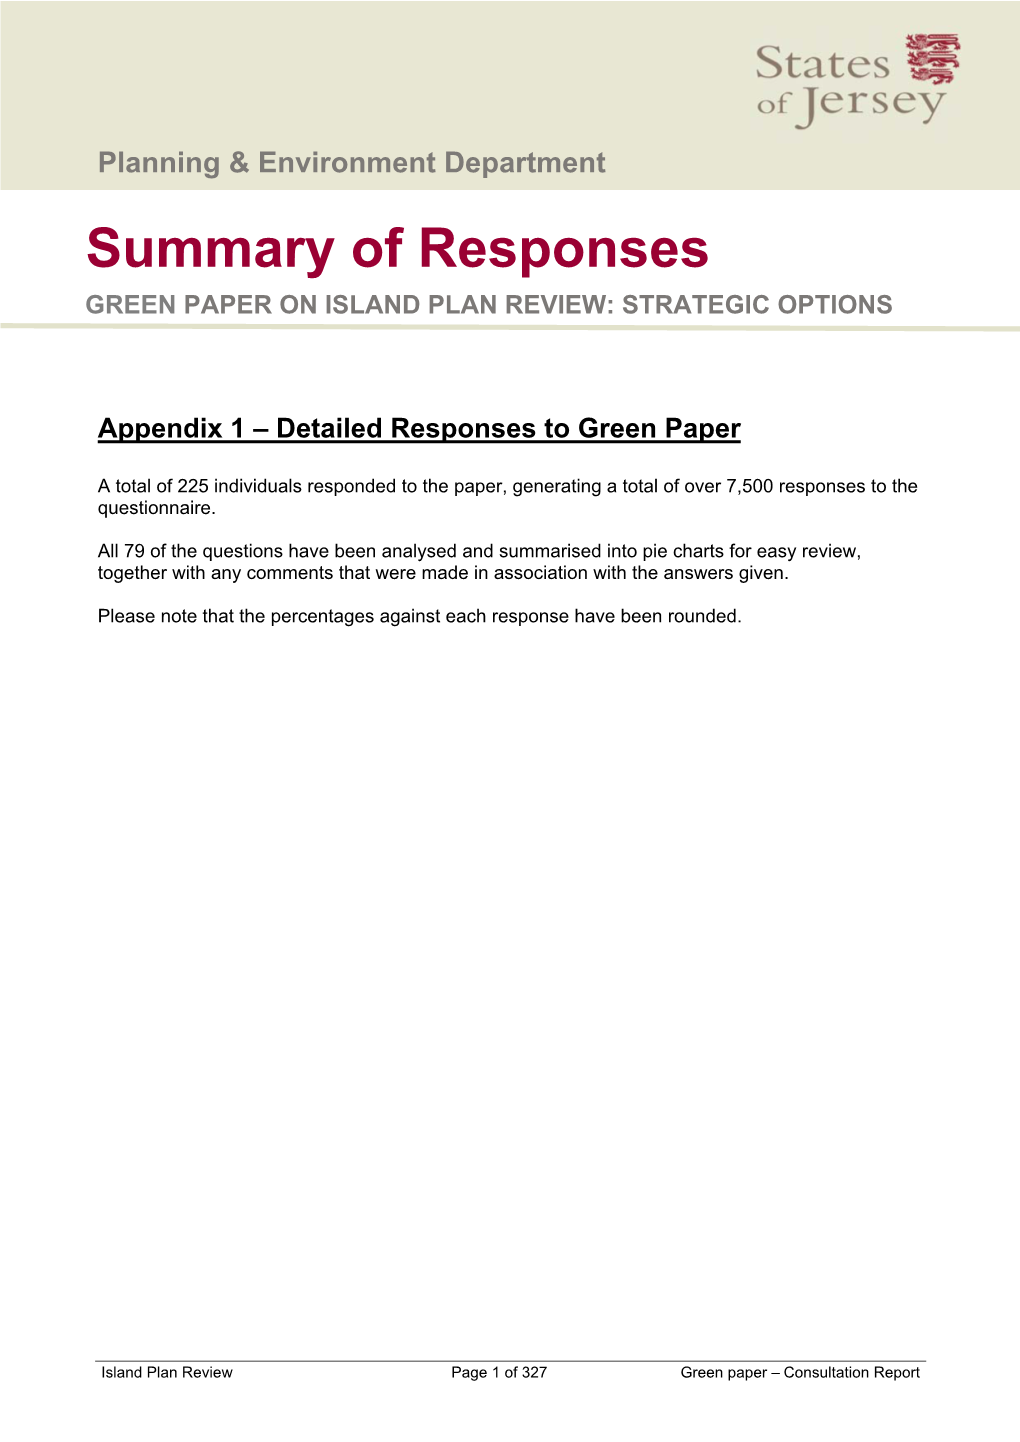 Green Paper Consultaion Report V3